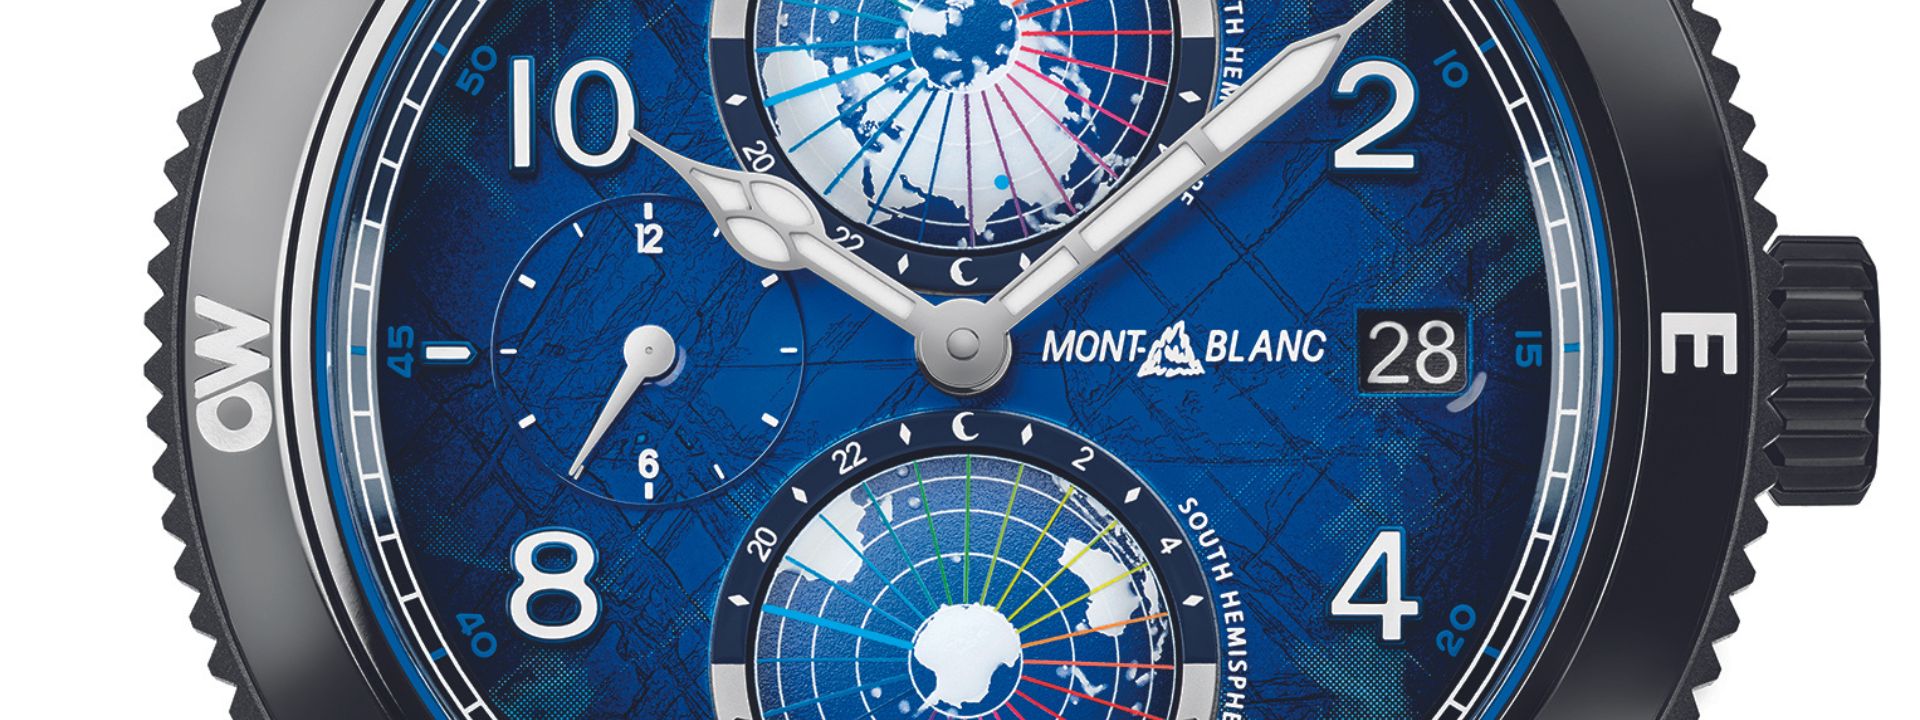 No momento você está vendo Montblanc no Only Watch 2023